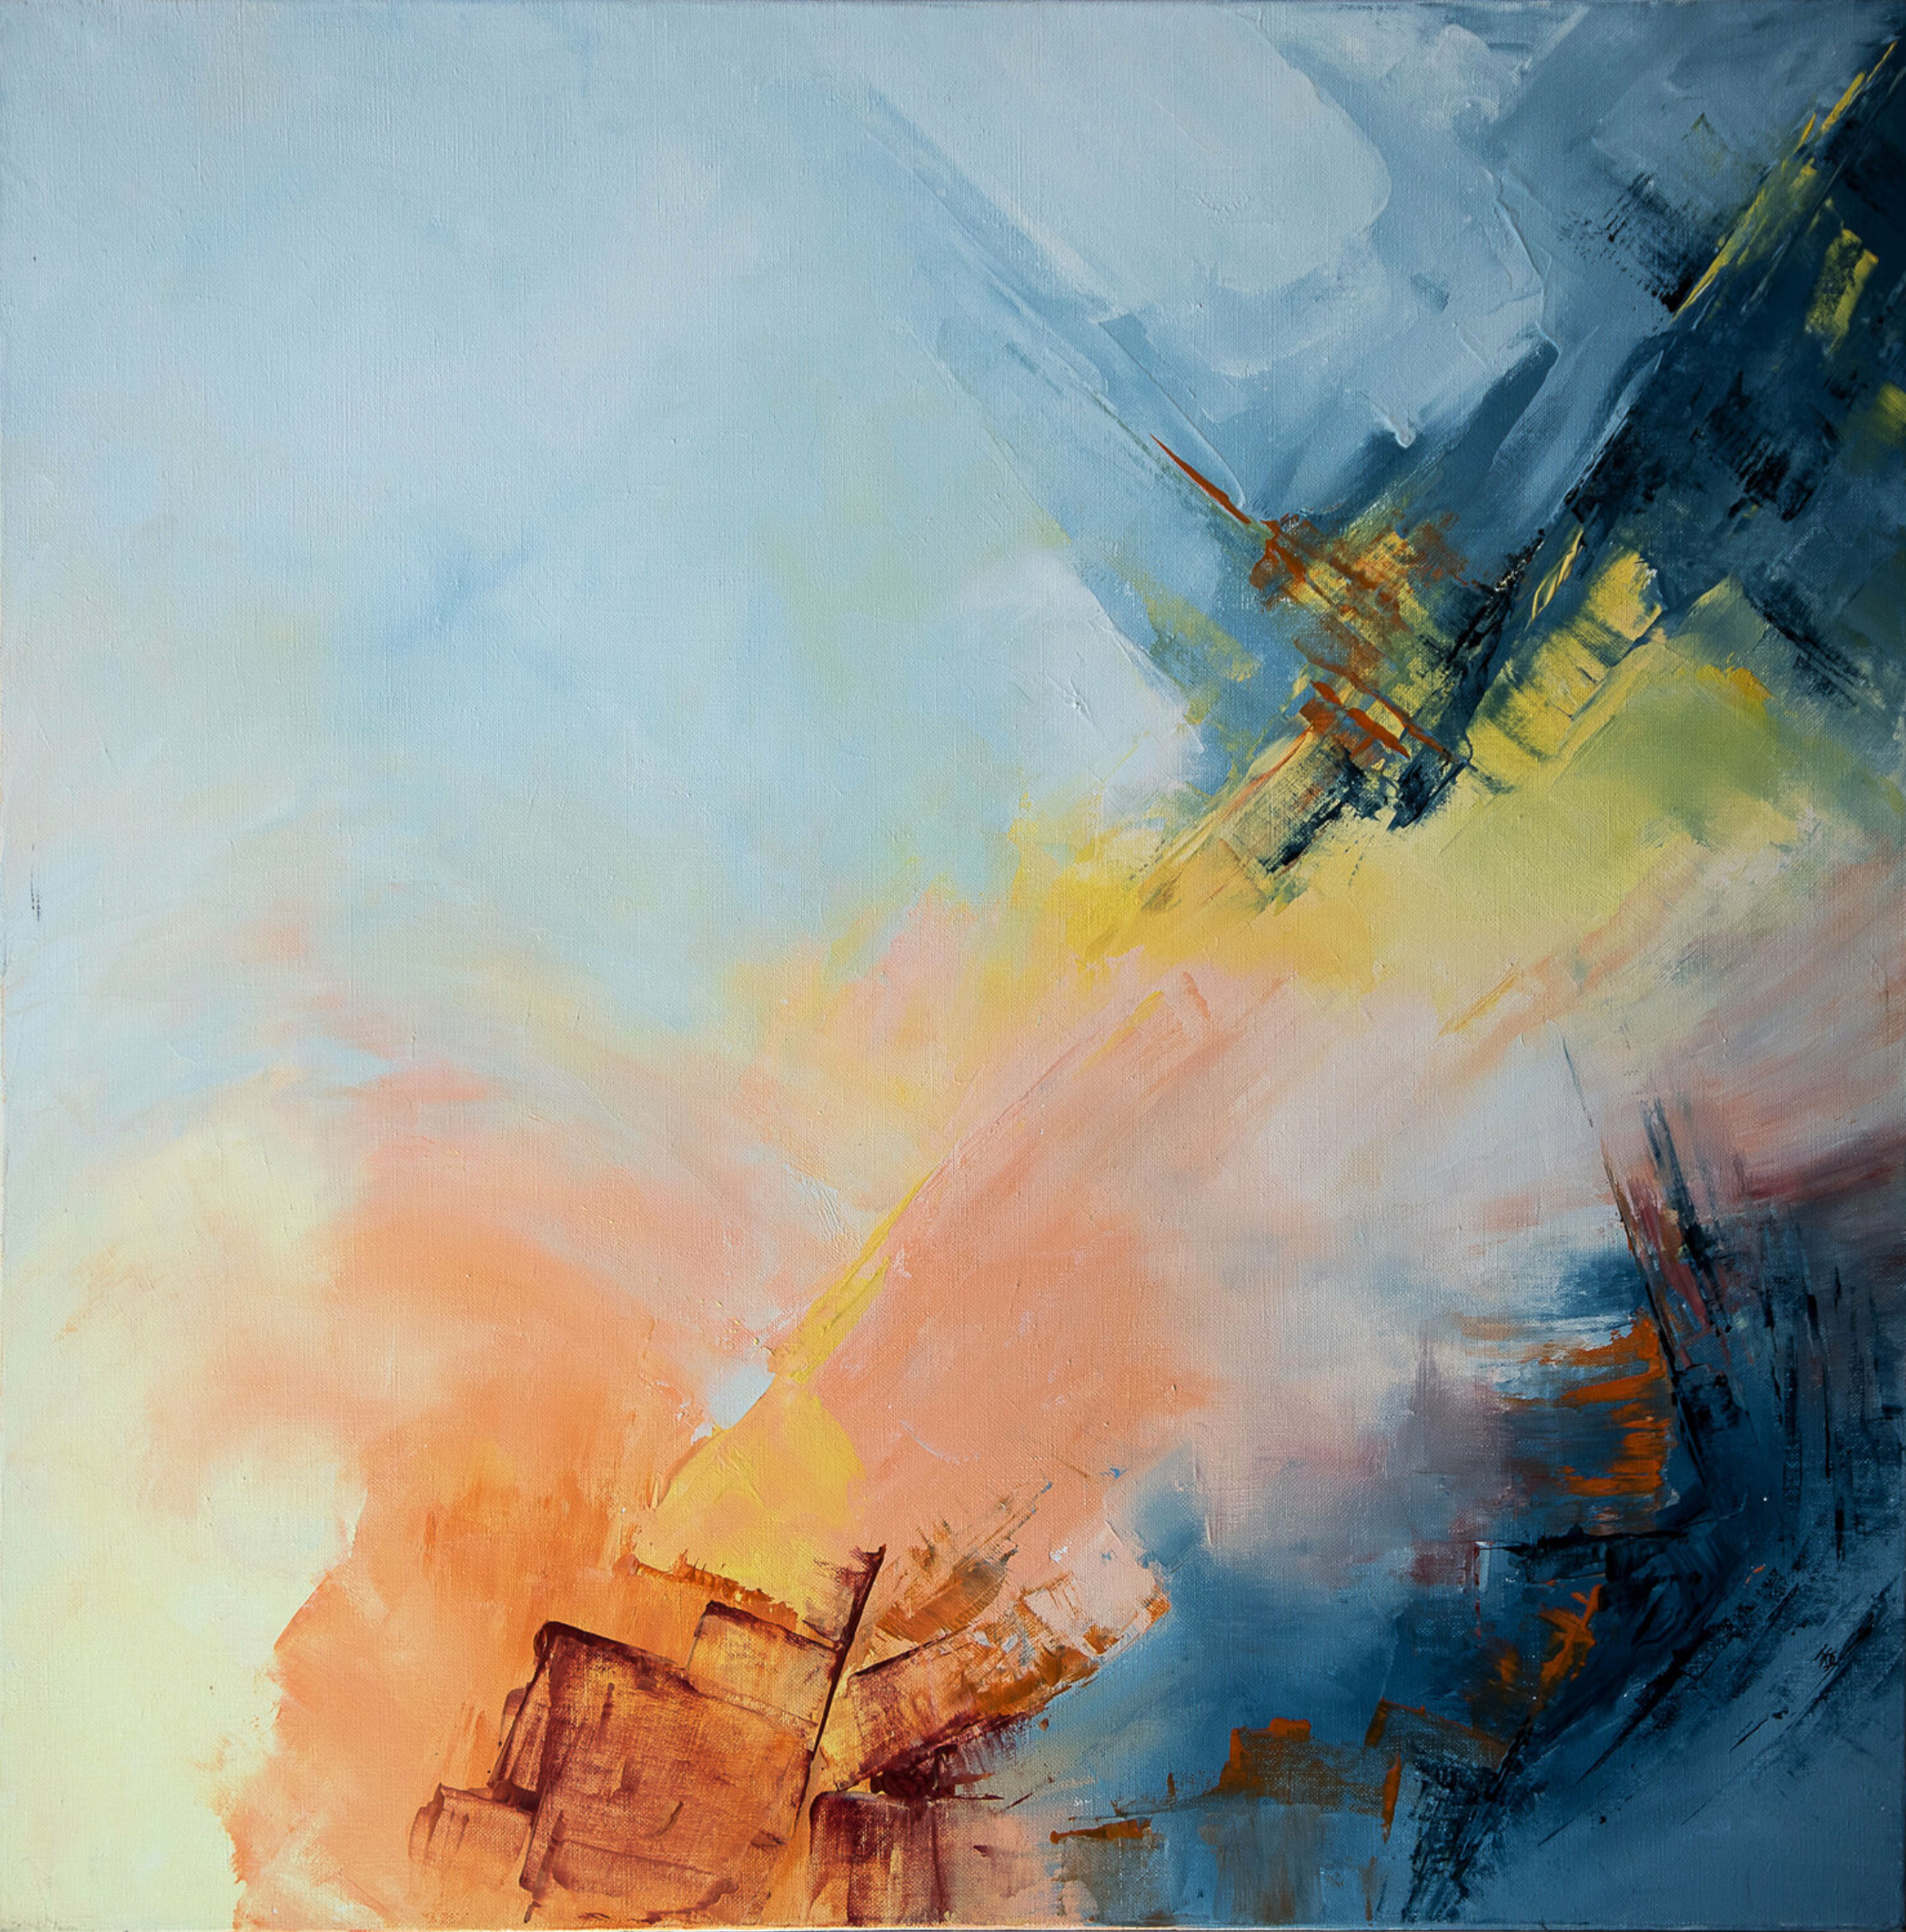 弗朗索瓦丝-杜古德-卡普特的 "Un jour une vie "抽象画展示了通过不同颜色的区域可视化的阶段，可以唤起一个生命的开始和结束的旅程。